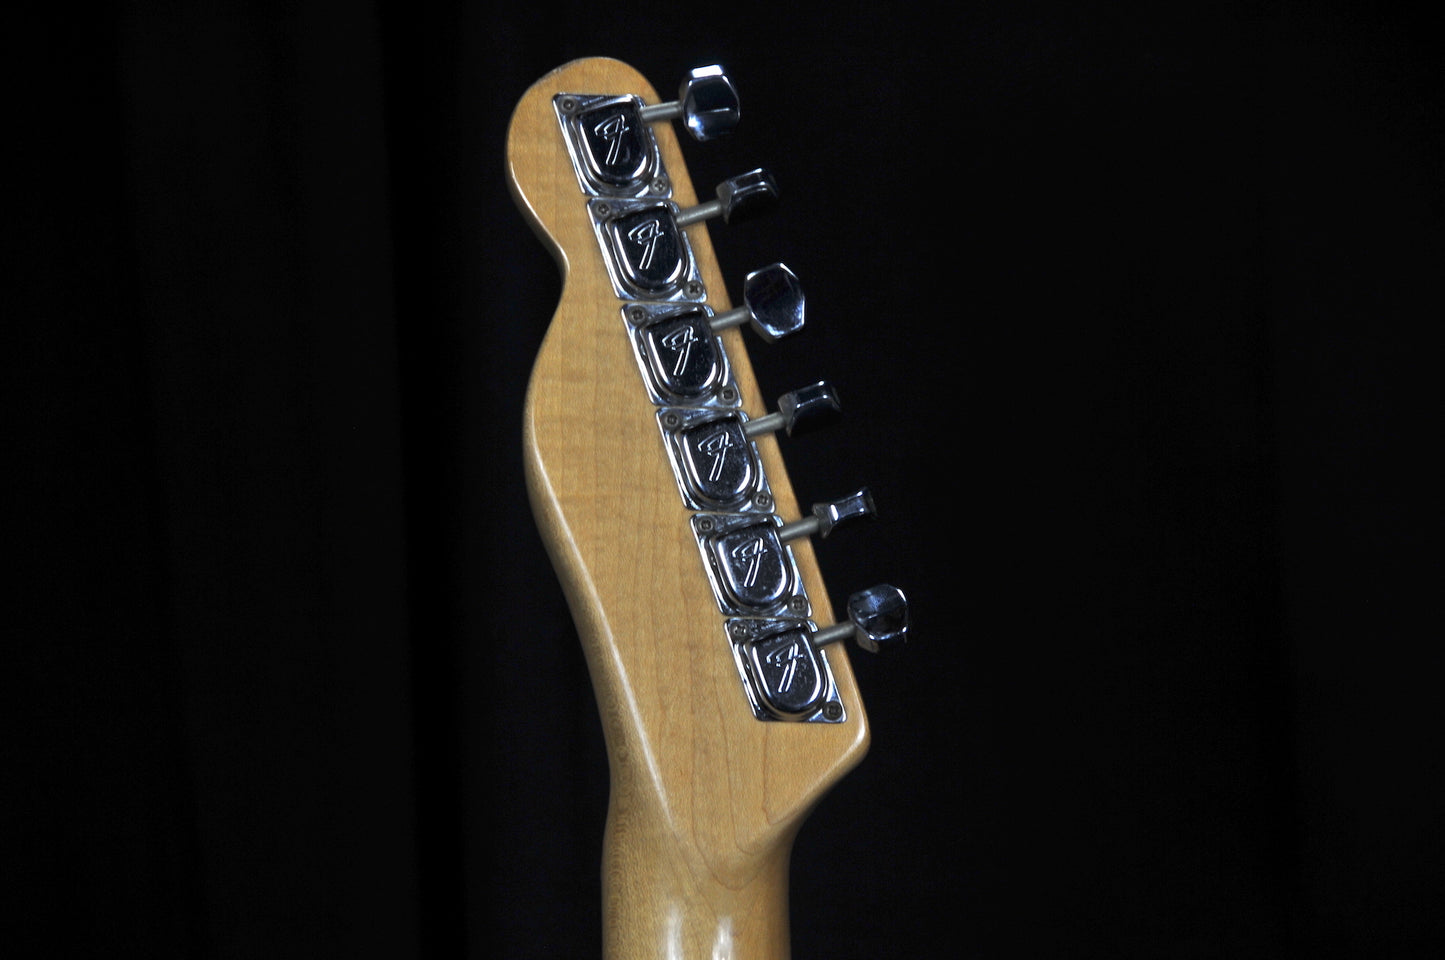 Fender Telecaster Black 1975